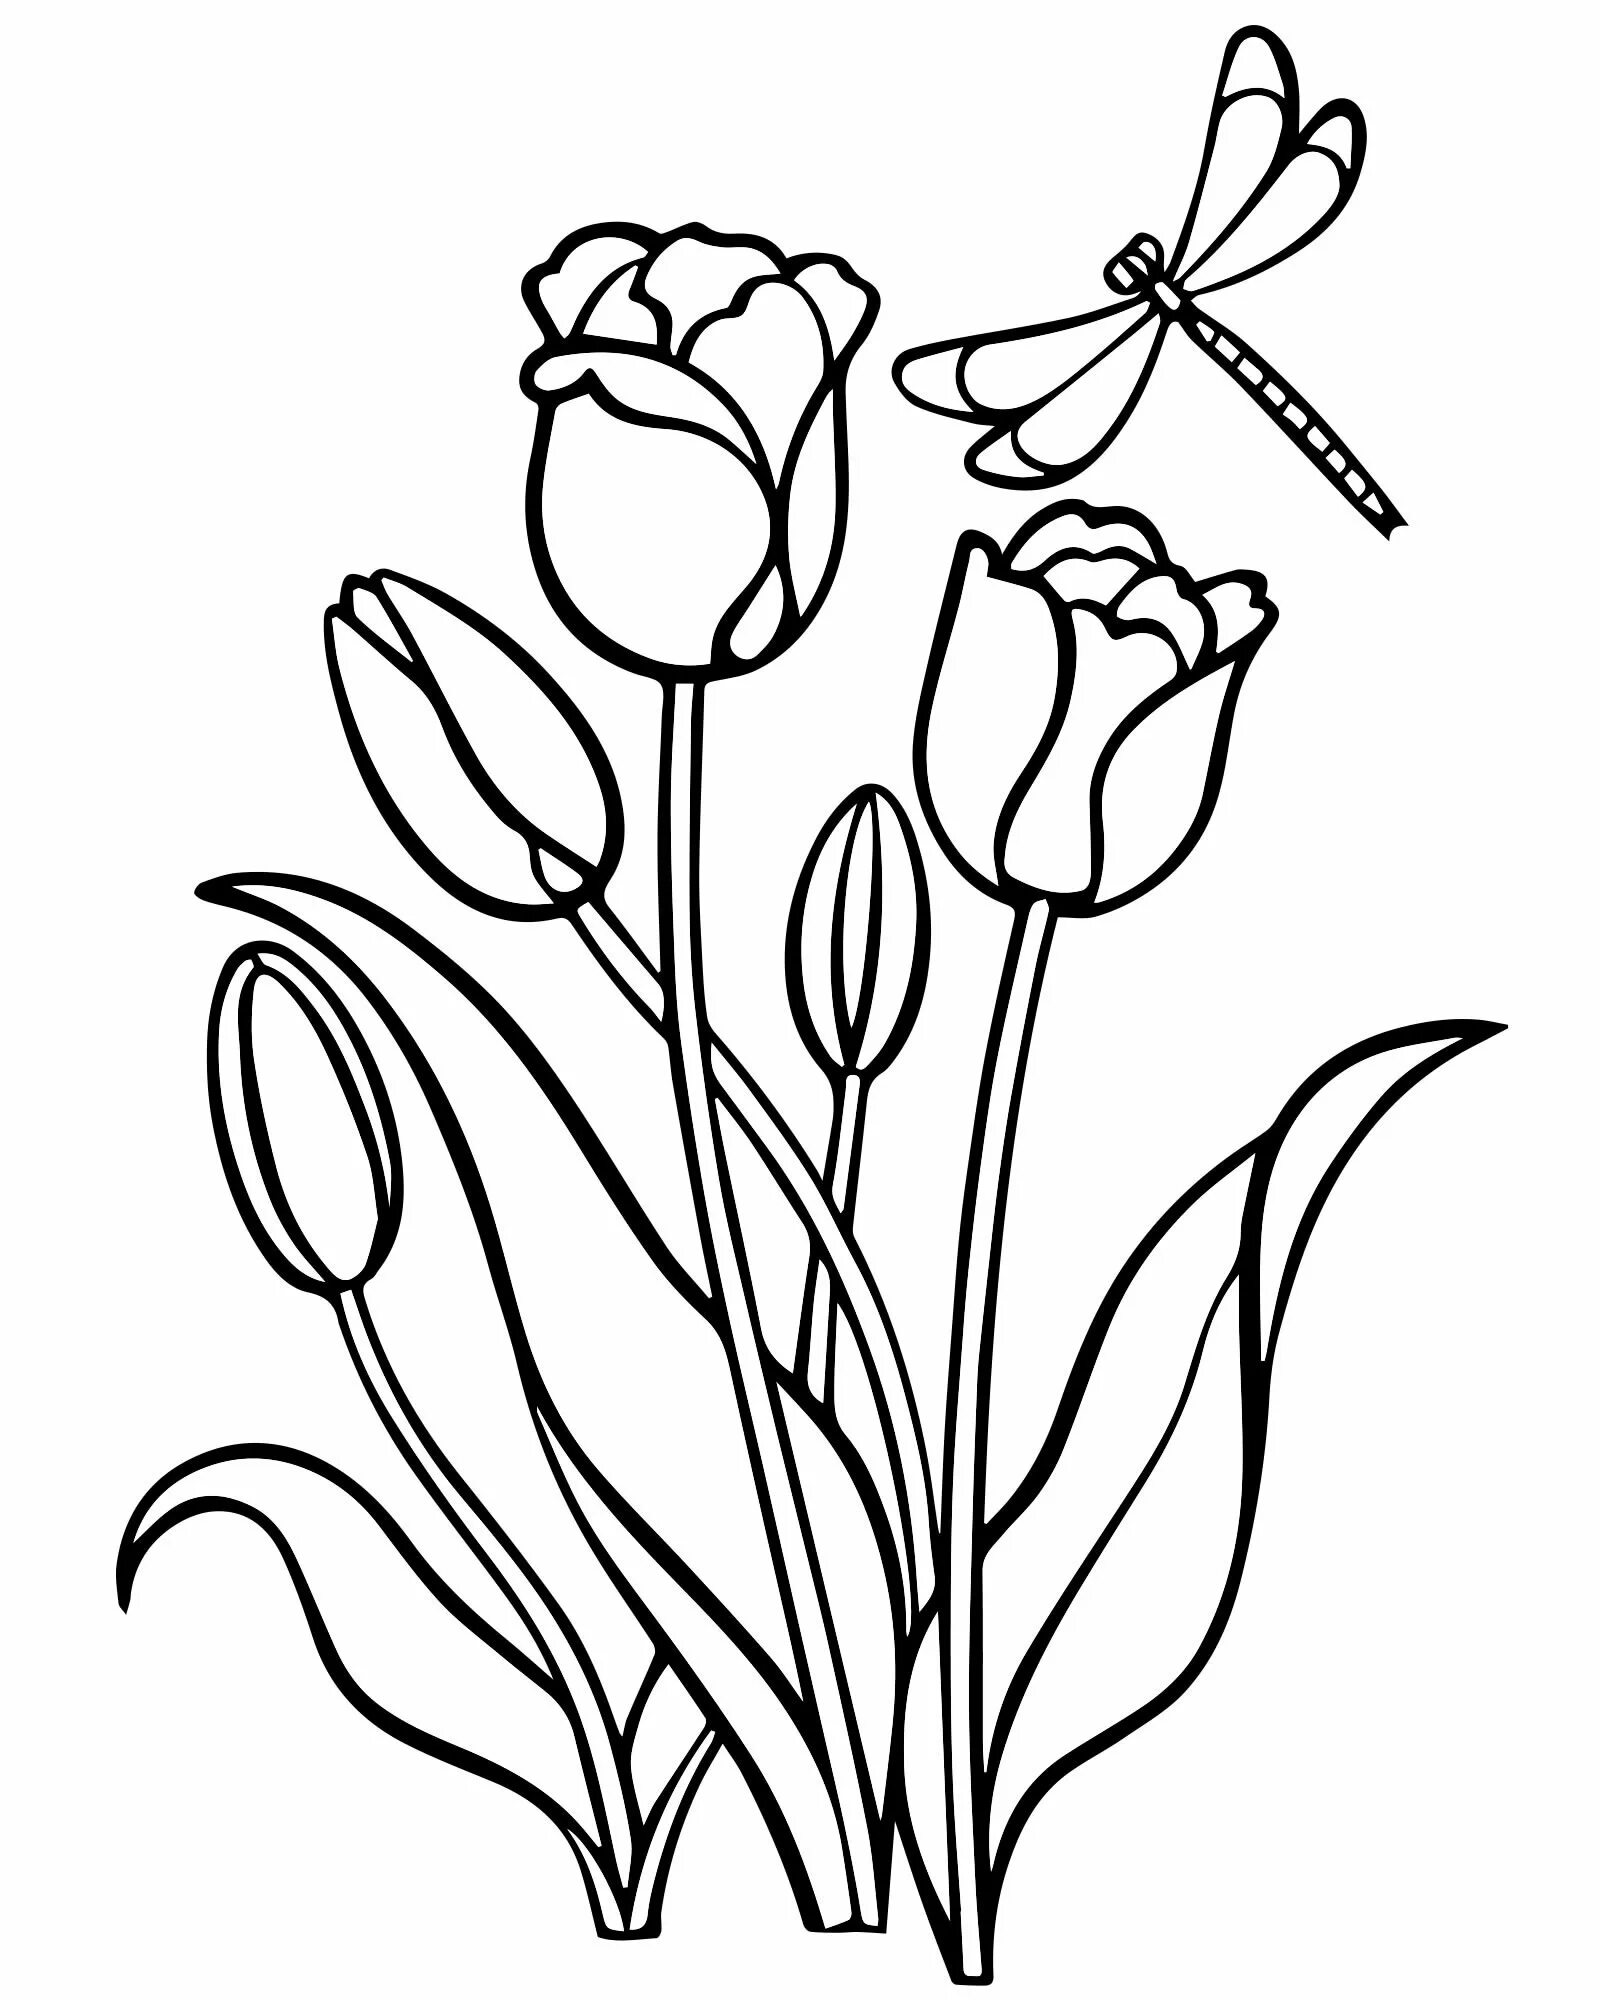 Раскраска сверкающие тюльпаны для детей 5-6 лет